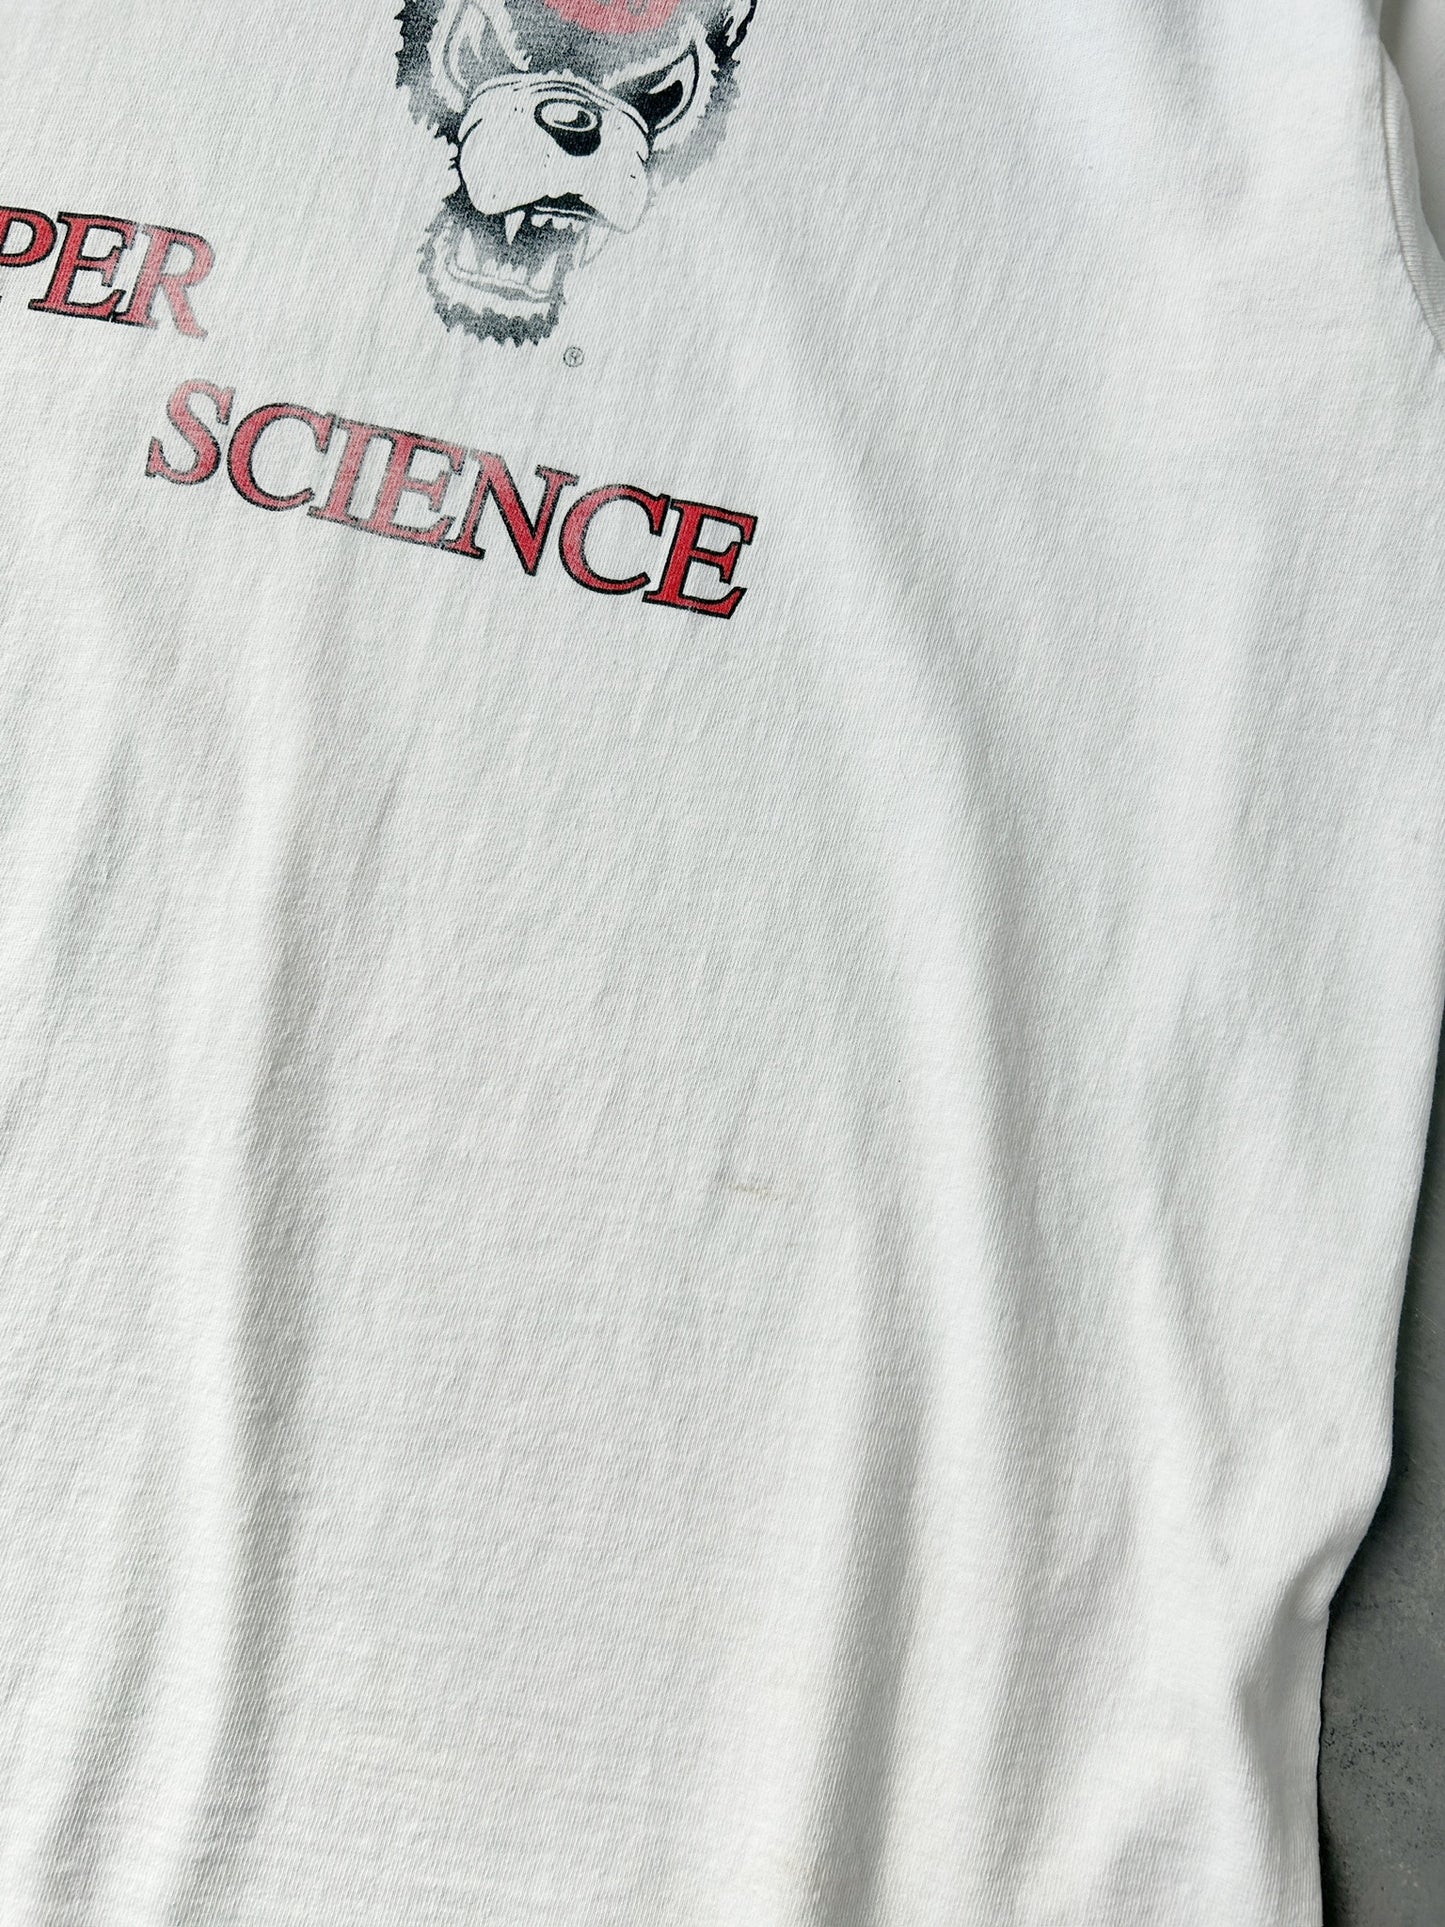 North Carolina State University T-Shirt 90's - XL